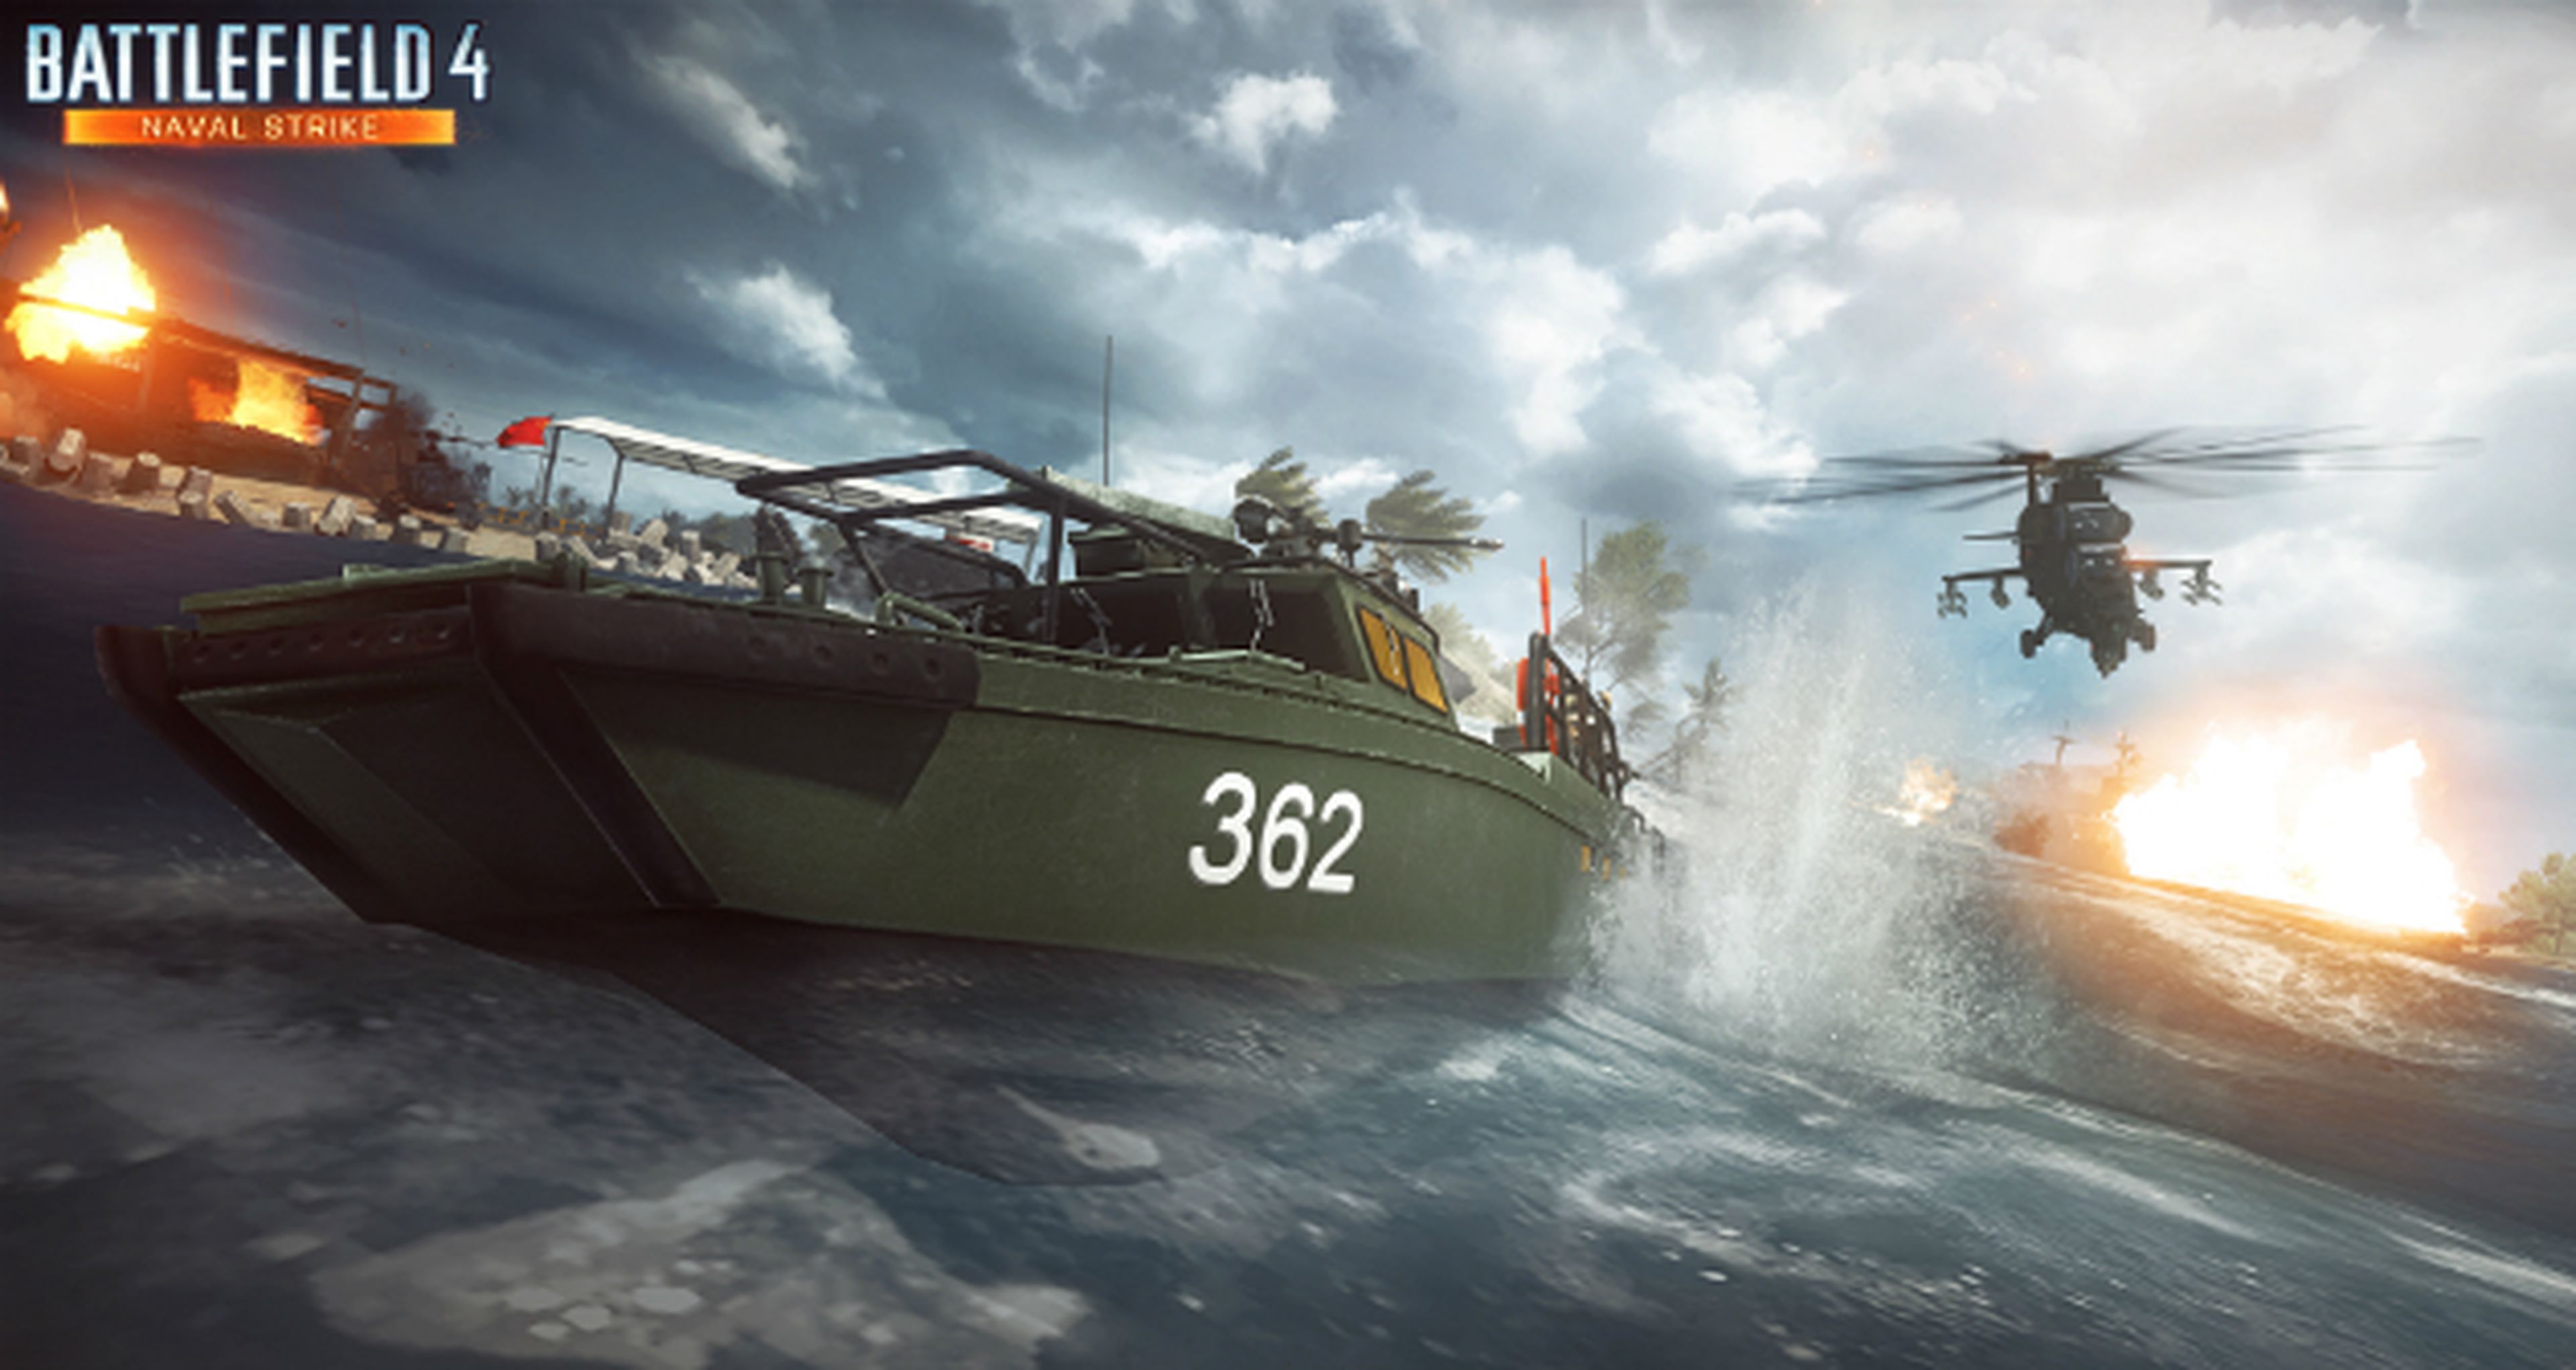 Ya disponible Battlefield 4 Naval Strike para todos los usuarios